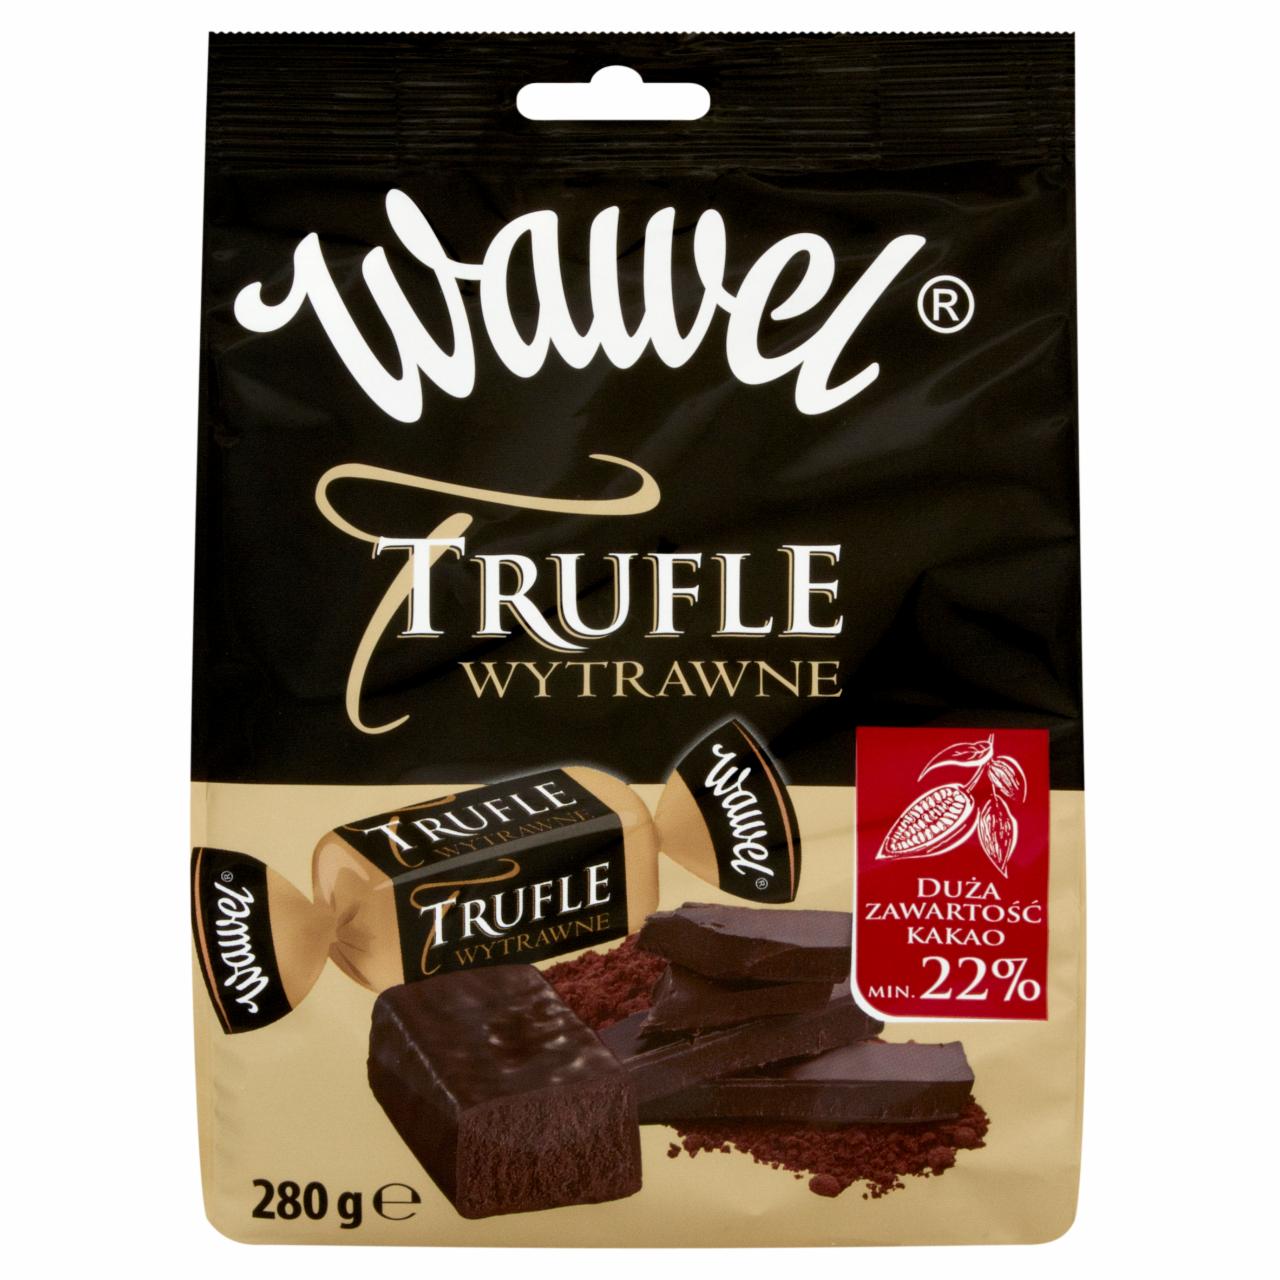 Zdjęcia - Wawel Trufle Wytrawne Cukierki kakaowe w czekoladzie 280 g